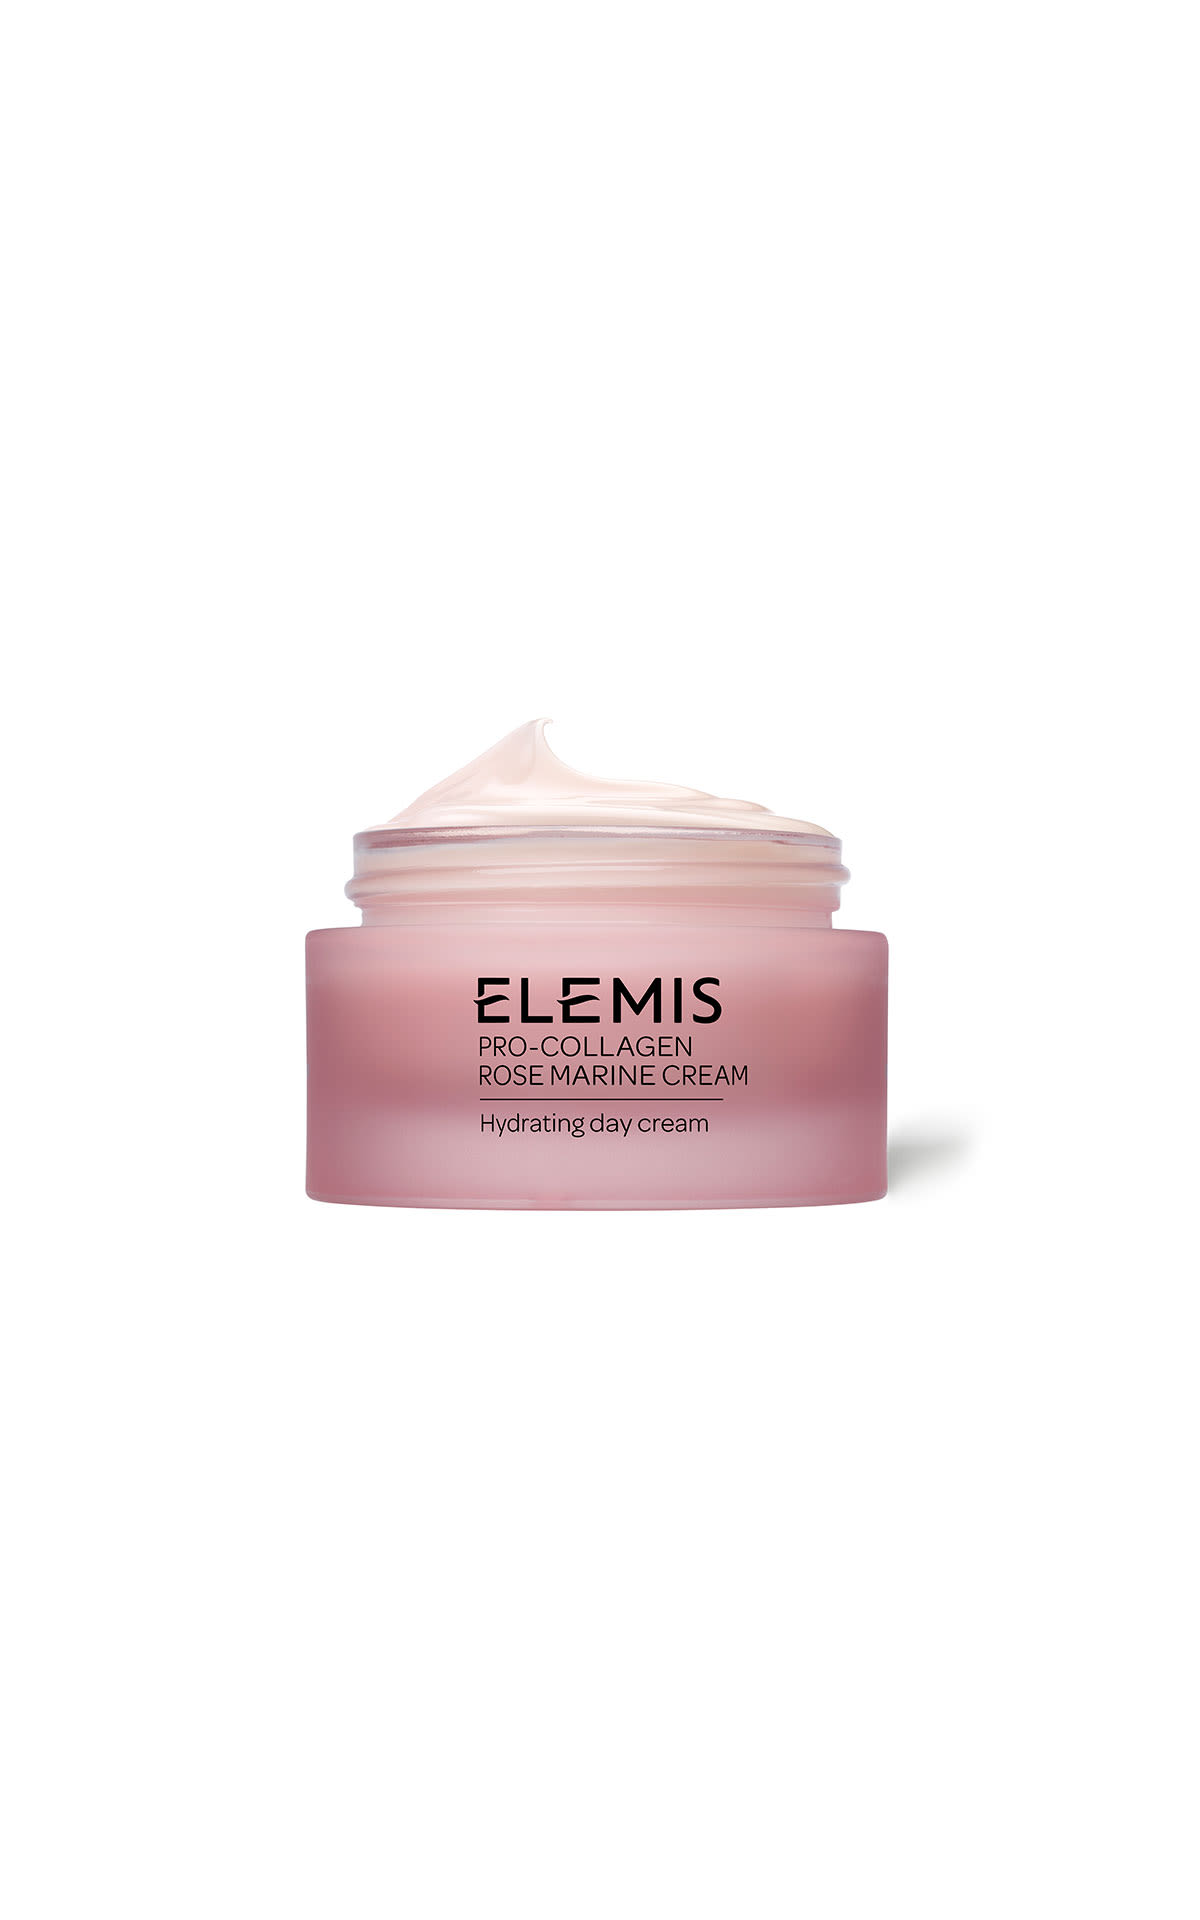 Elemis Pro-Collagen Rose Marine Cream 50ml from Bicester Village